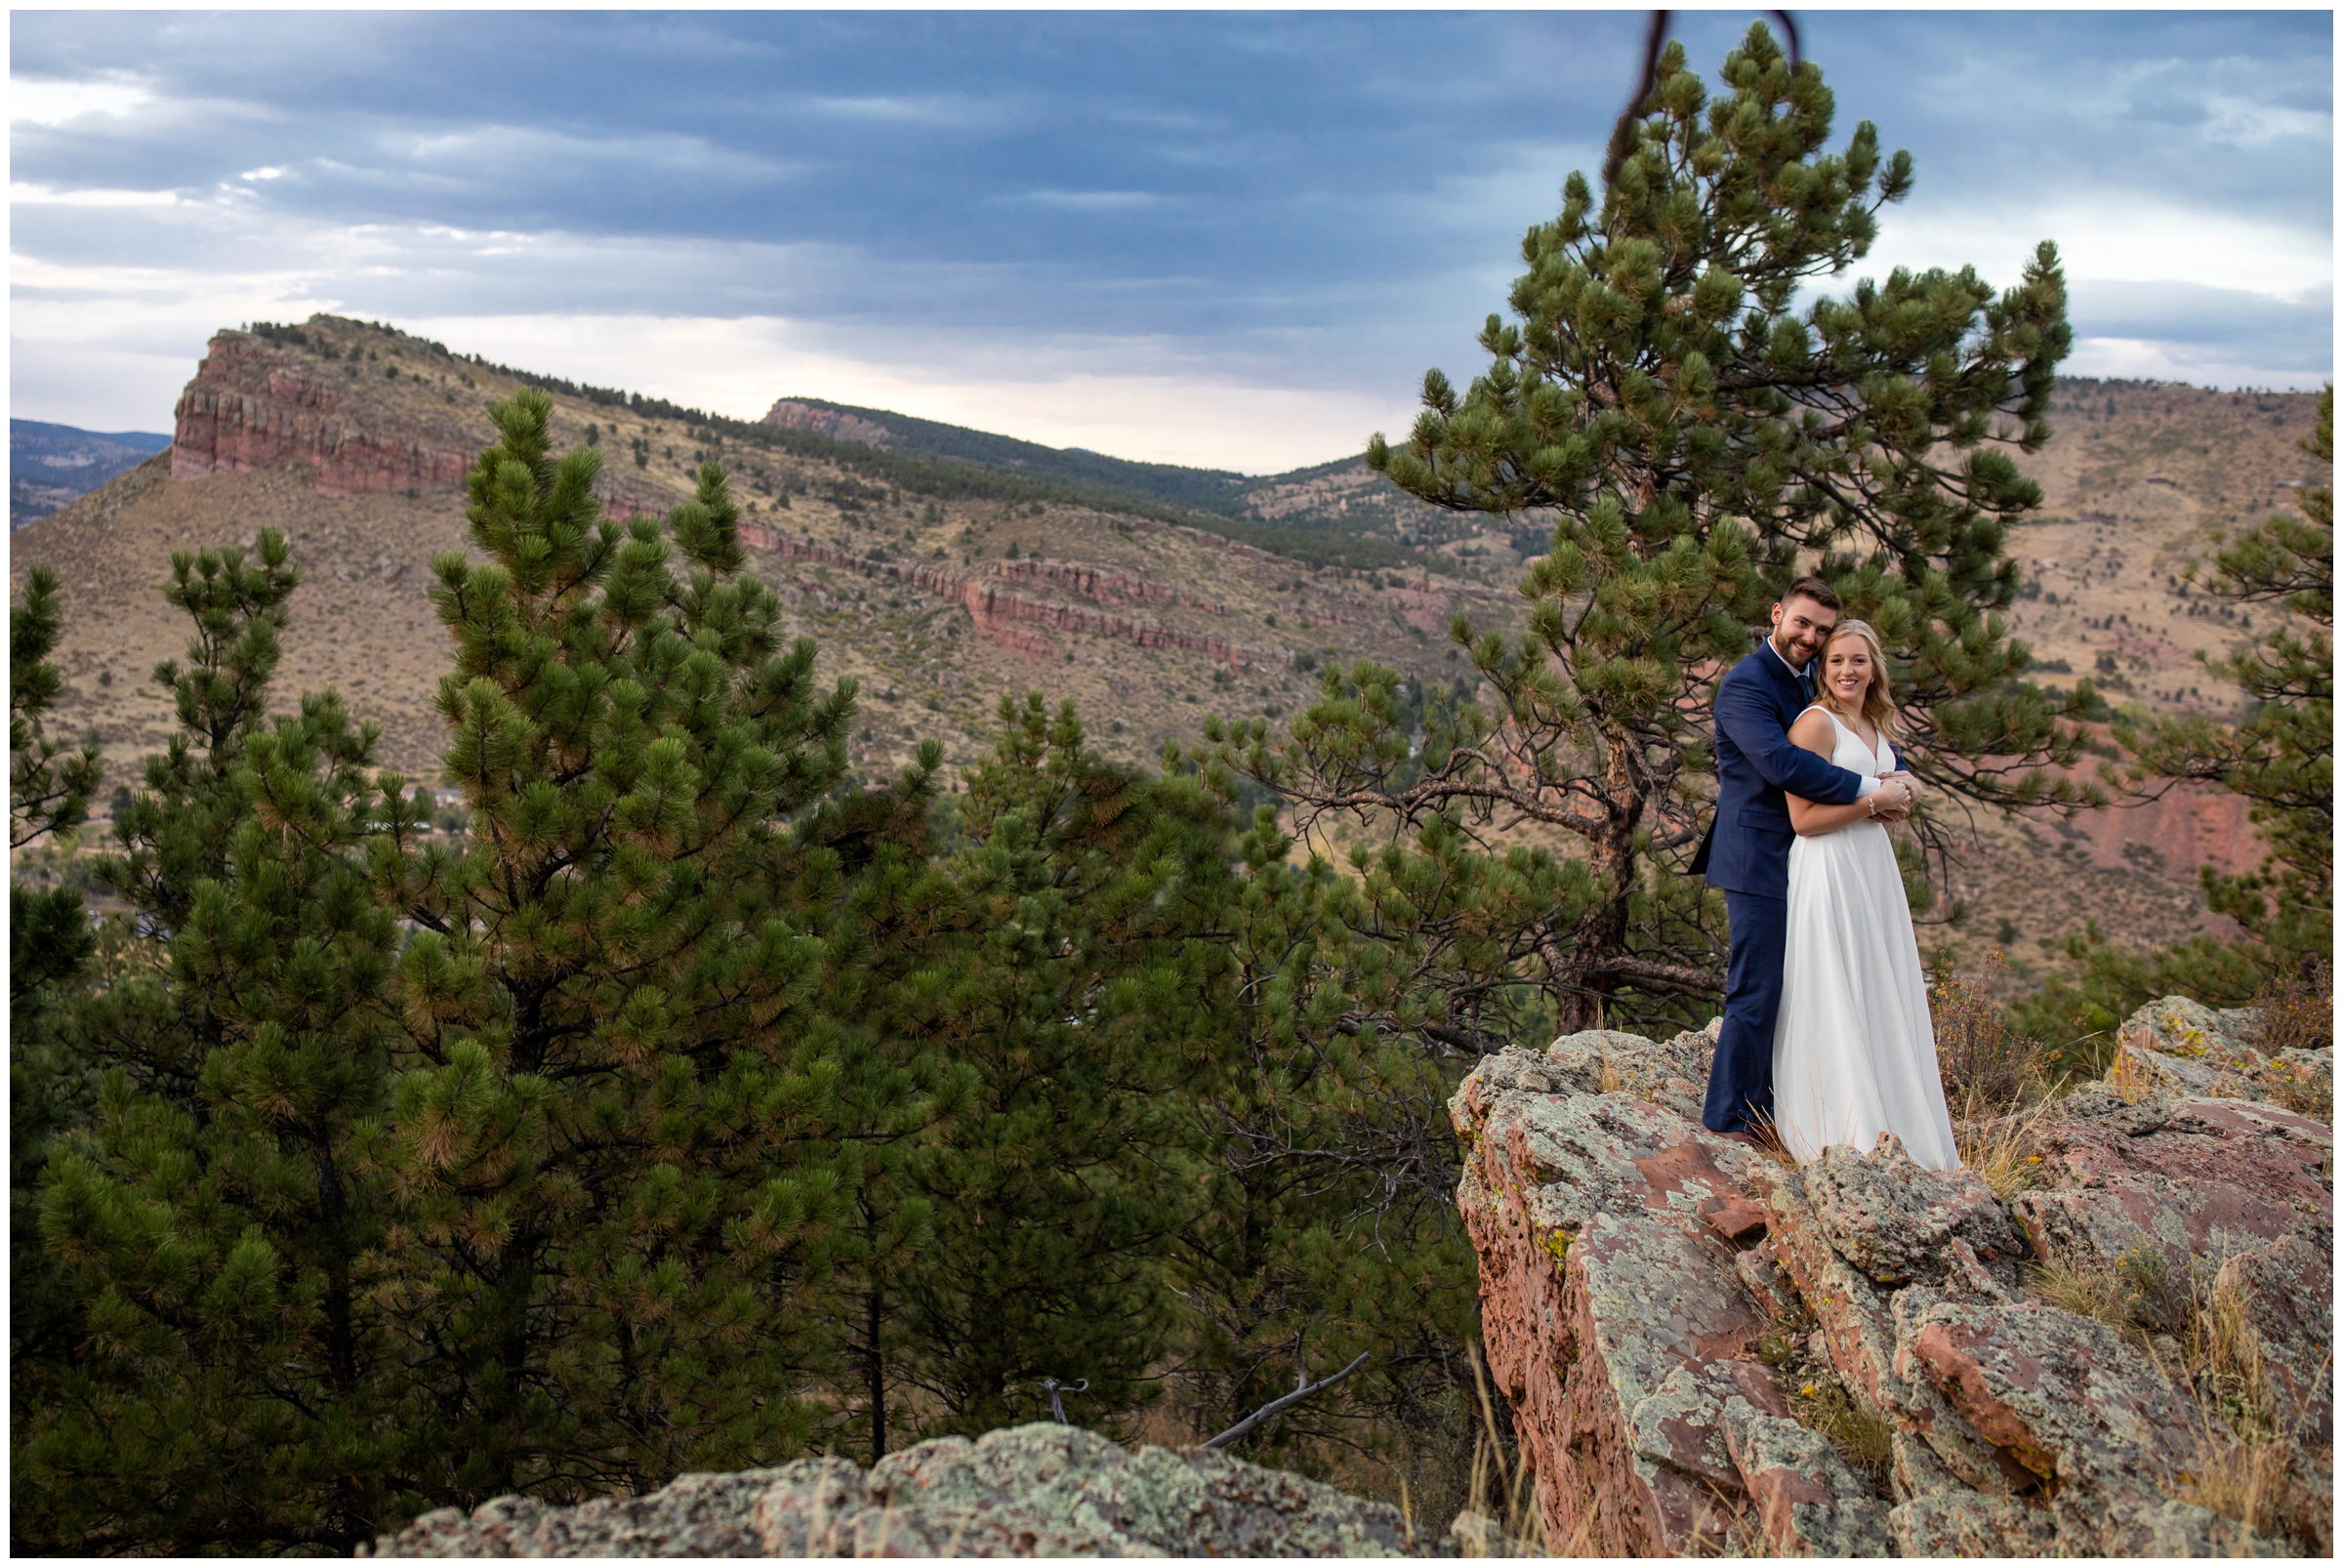 Colorado mountain wedding photos by Plum Pretty Photography